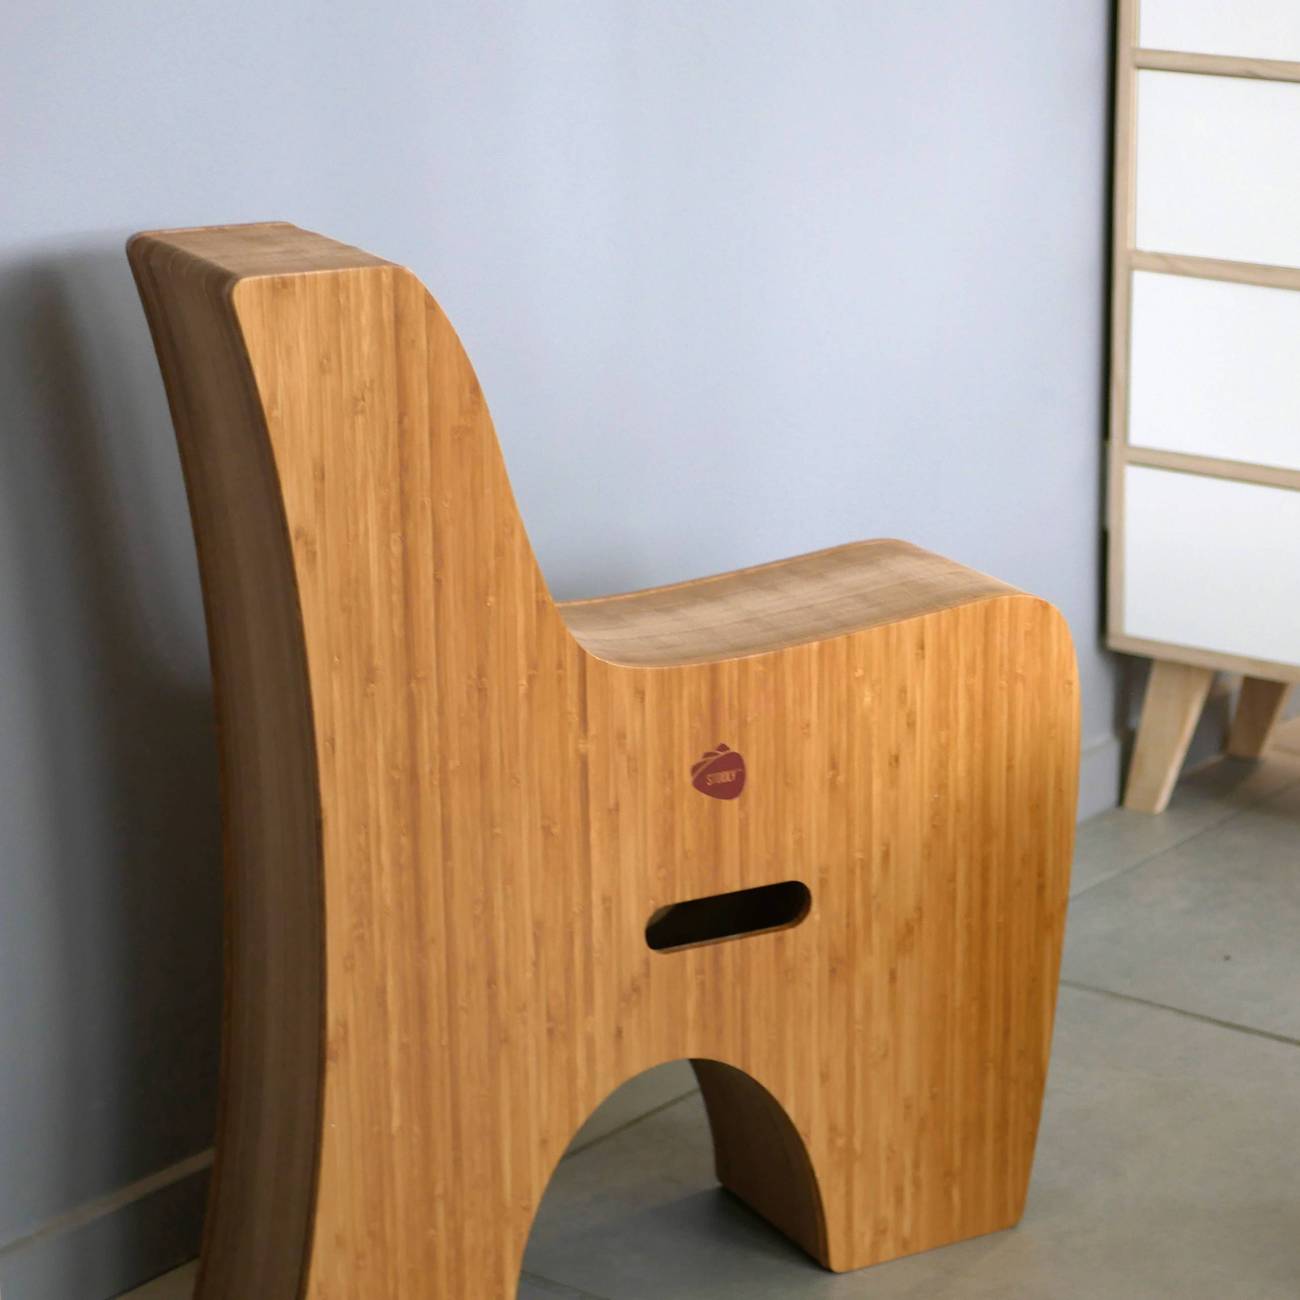 Sofa stooly pratique en carton alvéolé recyclable plié et qui peut se ranger facilement.